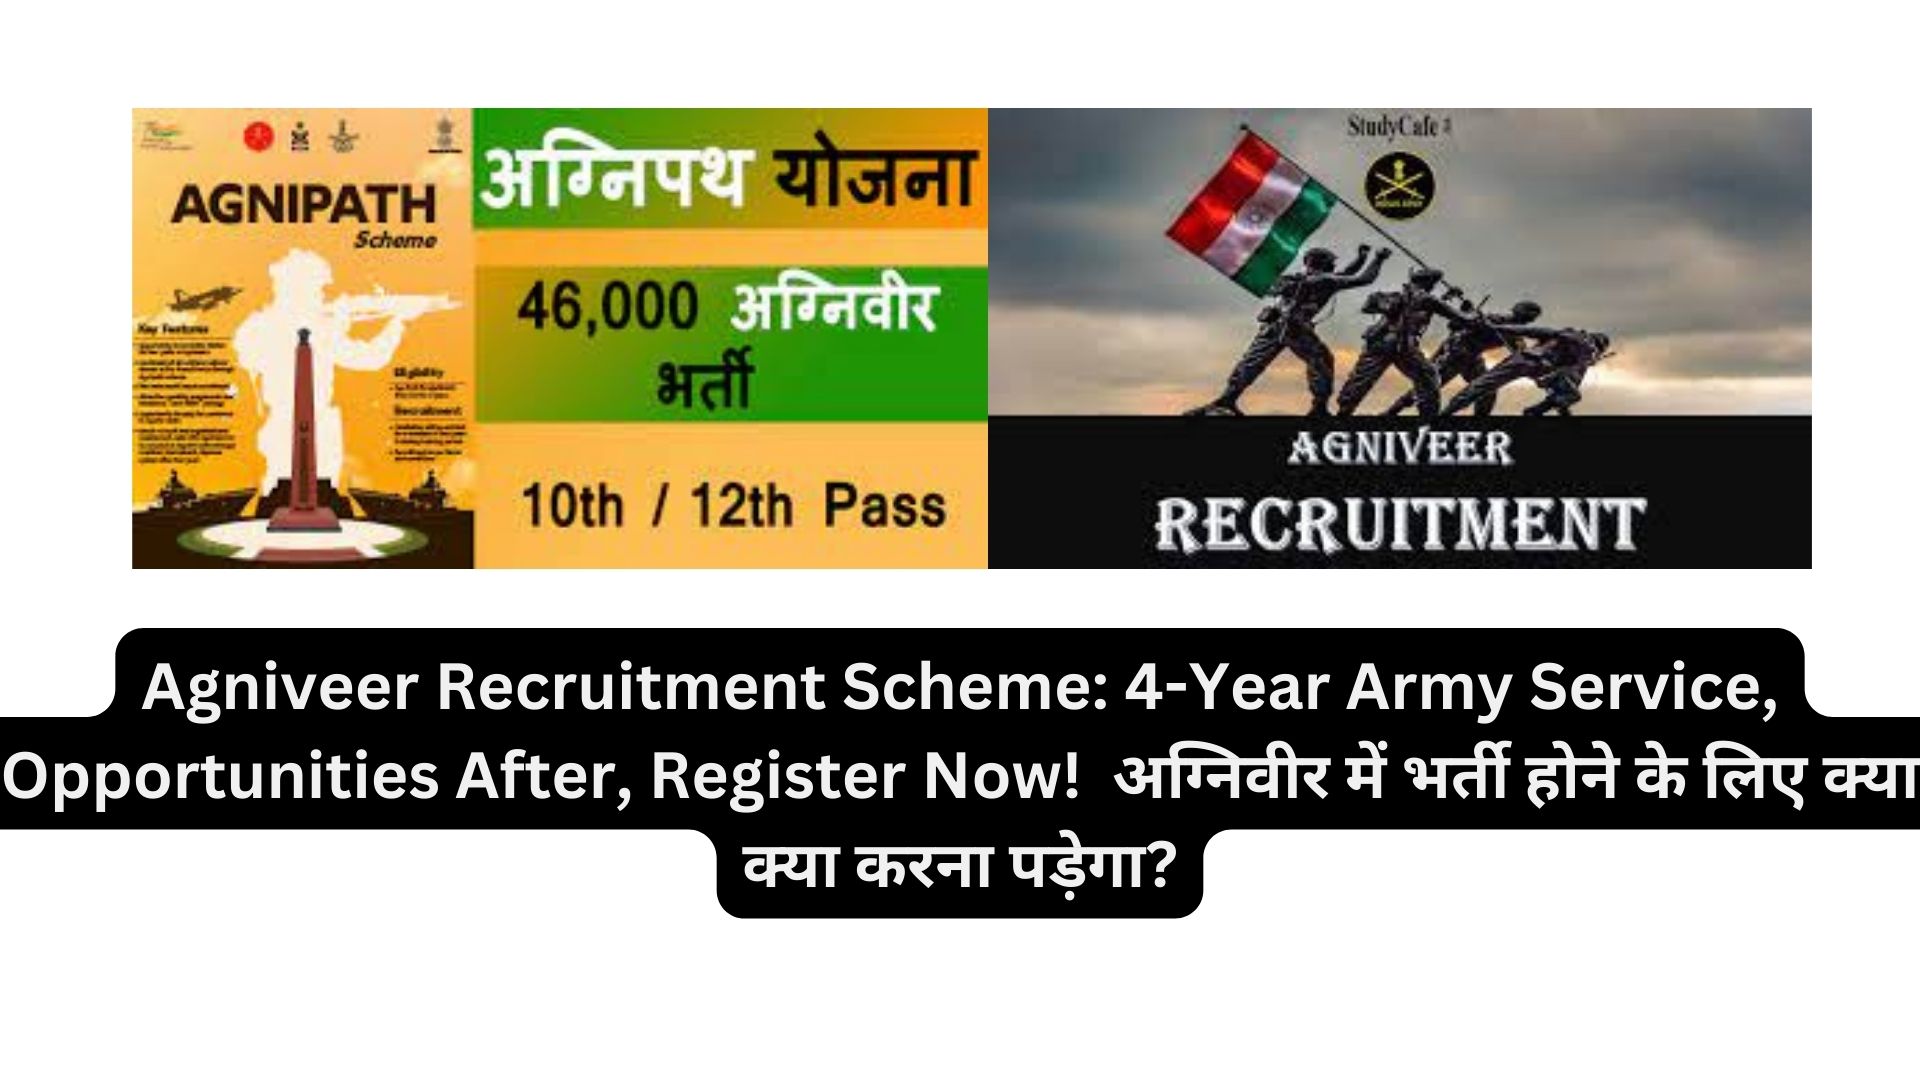 Agniveer Recruitment Scheme: 4-Year Army Service, Opportunities After, Register Now! अग्निवीर में भर्ती होने के लिए क्या क्या करना पड़ेगा?